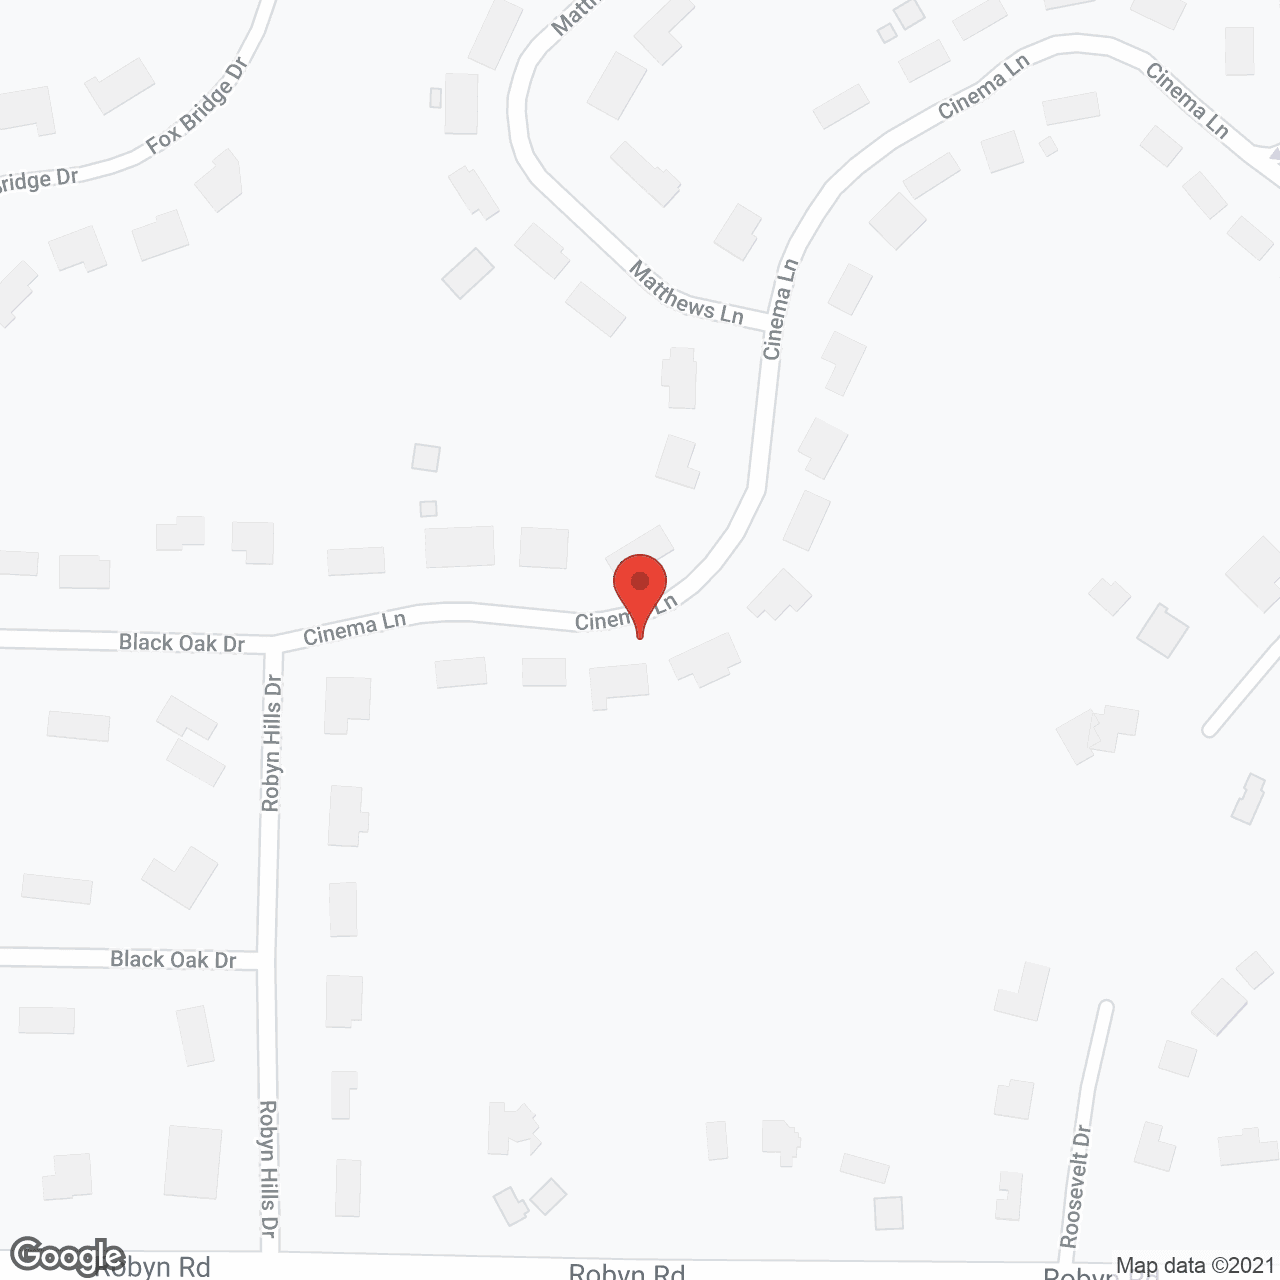 Friendship Village Sunset Hills in google map